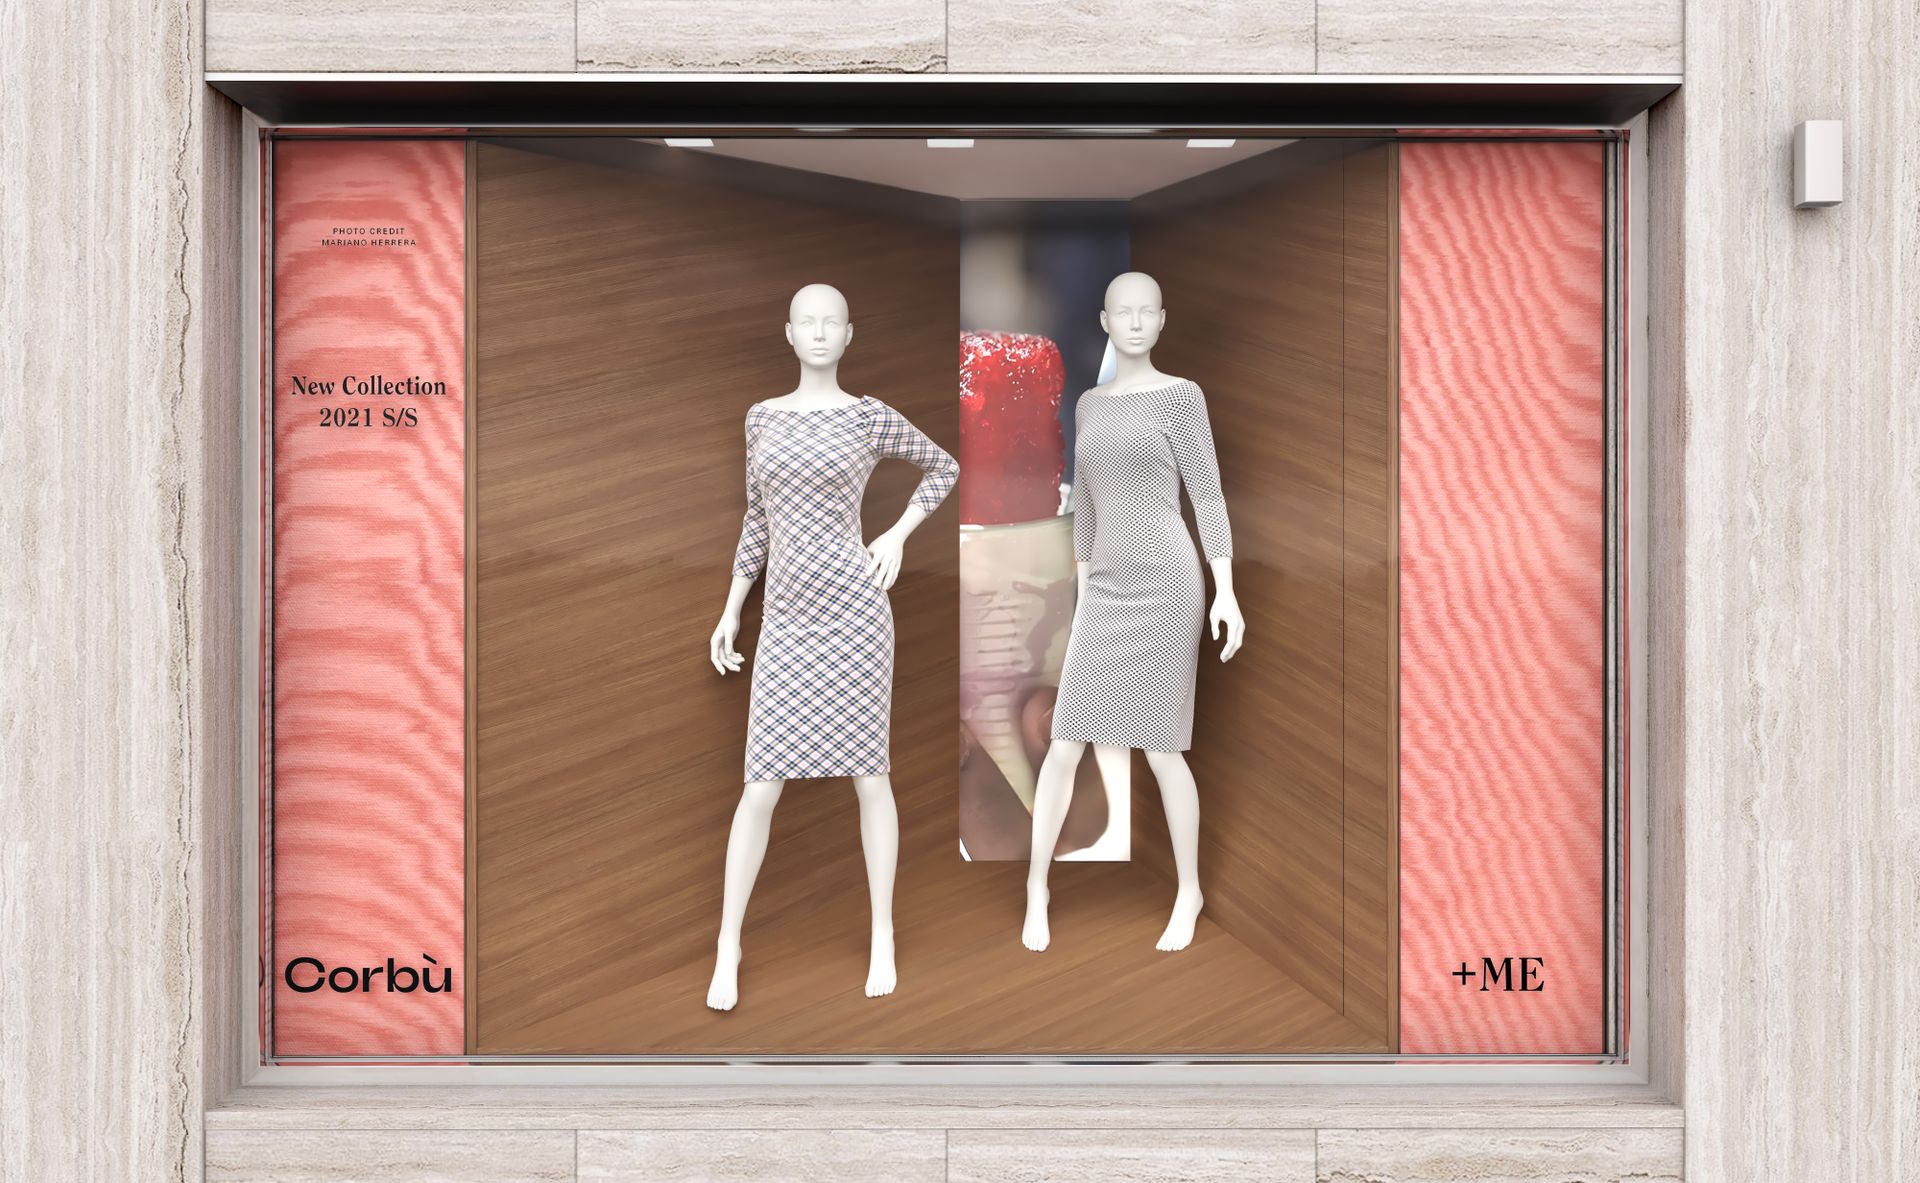 Progetto interior design, ristrutturazione e rebranding di boutique Corbù +ME moda lusso Bergamo, Milano, Lago di Como, Londra, New York, Parigi. Officina Magisafi - vetrina 2